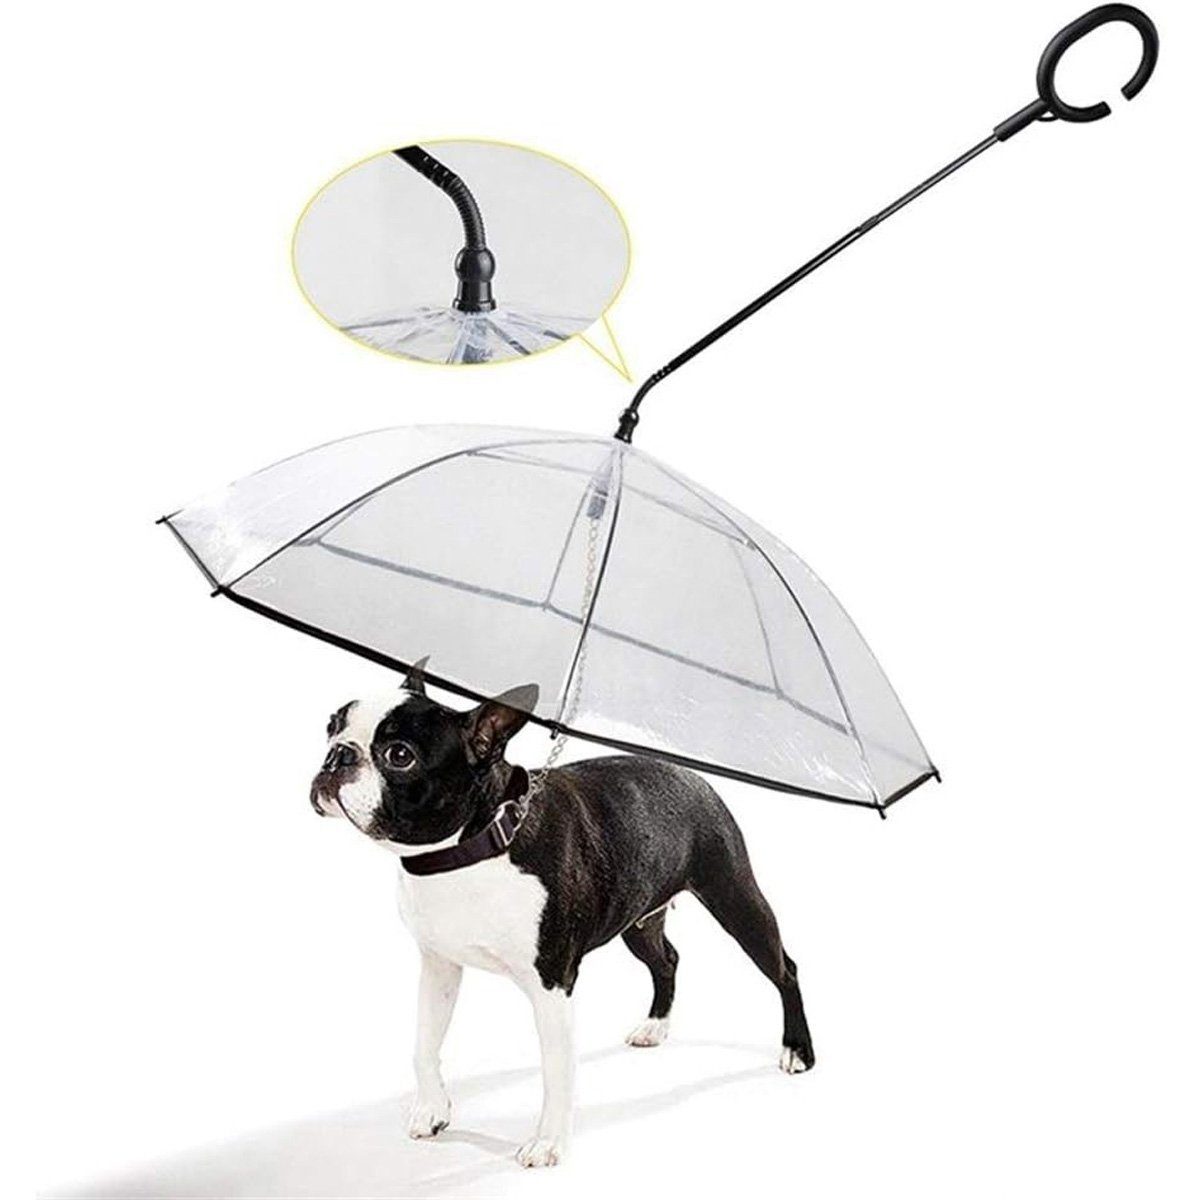 yozhiqu Langregenschirm Pets walking on rainy days, transparent and adjustable umbrella, Faltbarer Regenschirm mit Schnur für kleine und mittelgroße Hunde